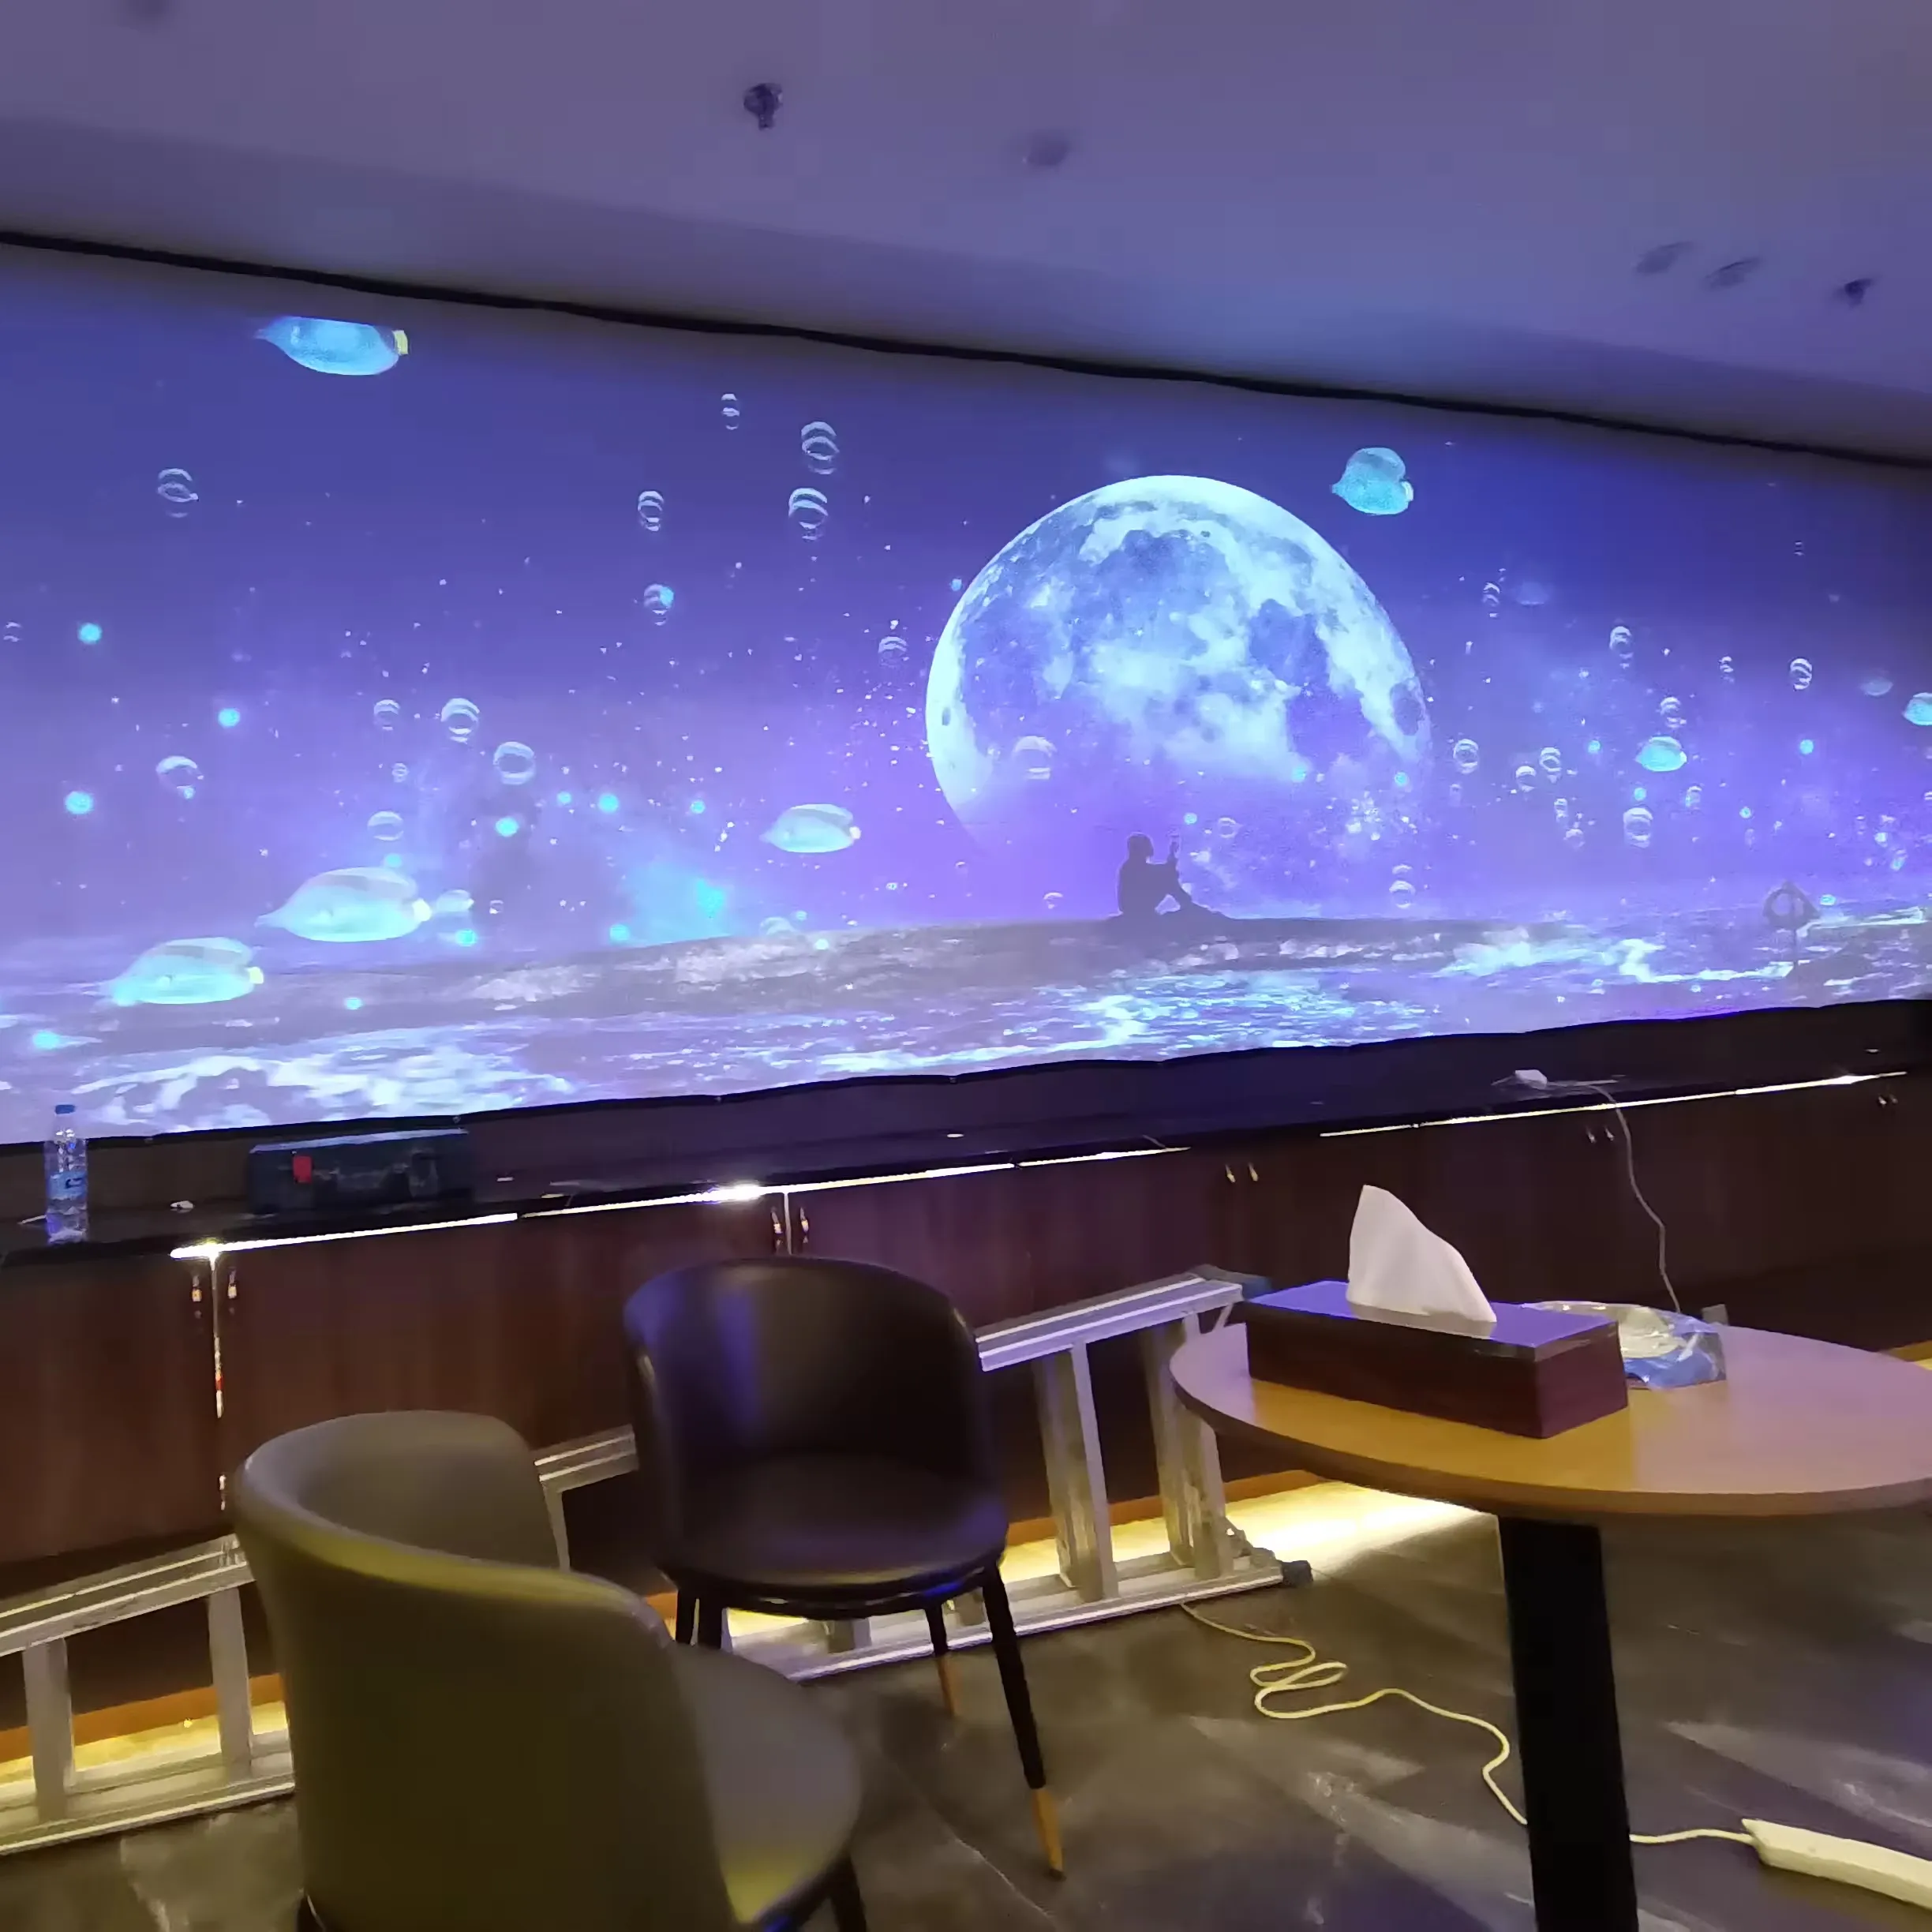 KTV/Bar/Club sistem proyeksi harga proyektor lantai interaktif Hologram rumah mendalam